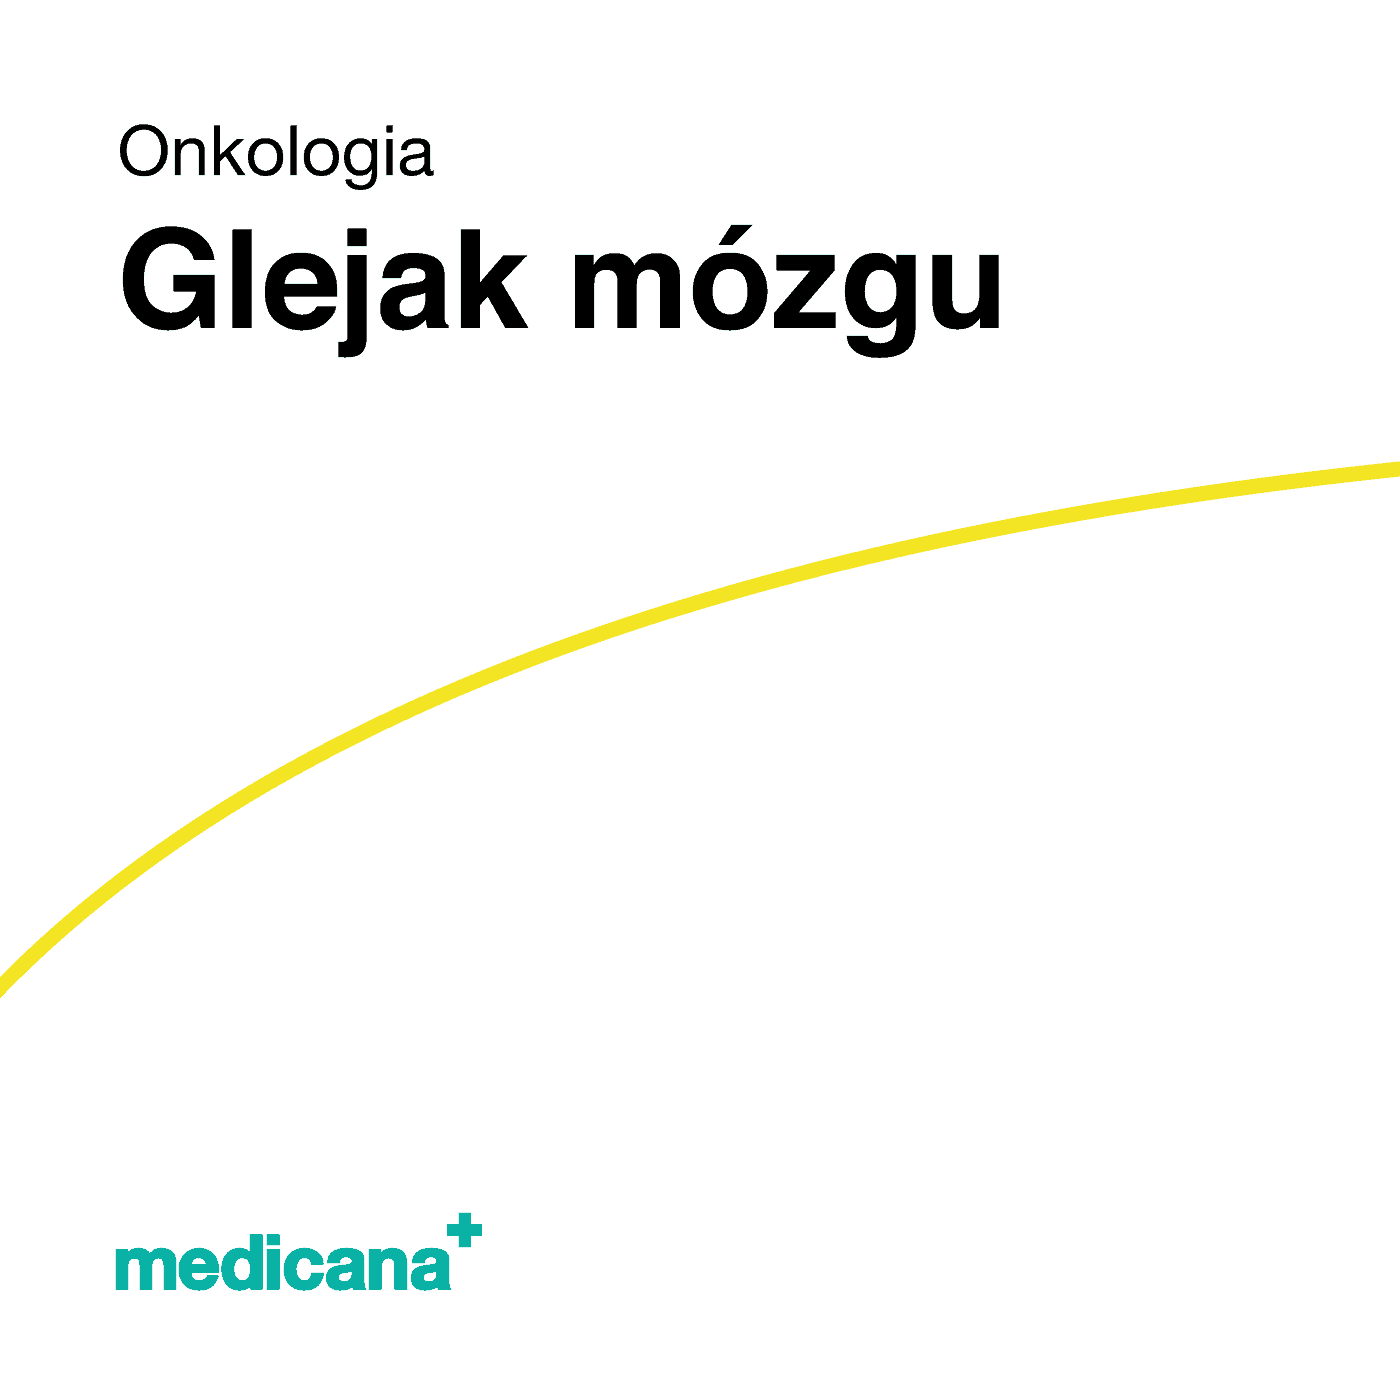 Grafika, białe tło z żółtą kreską, czarnym napisem Onkologia - Glejak mózgu i logo Medicana Centrum Terapii Medyczna Marihuana w lewym dolnym rogu.